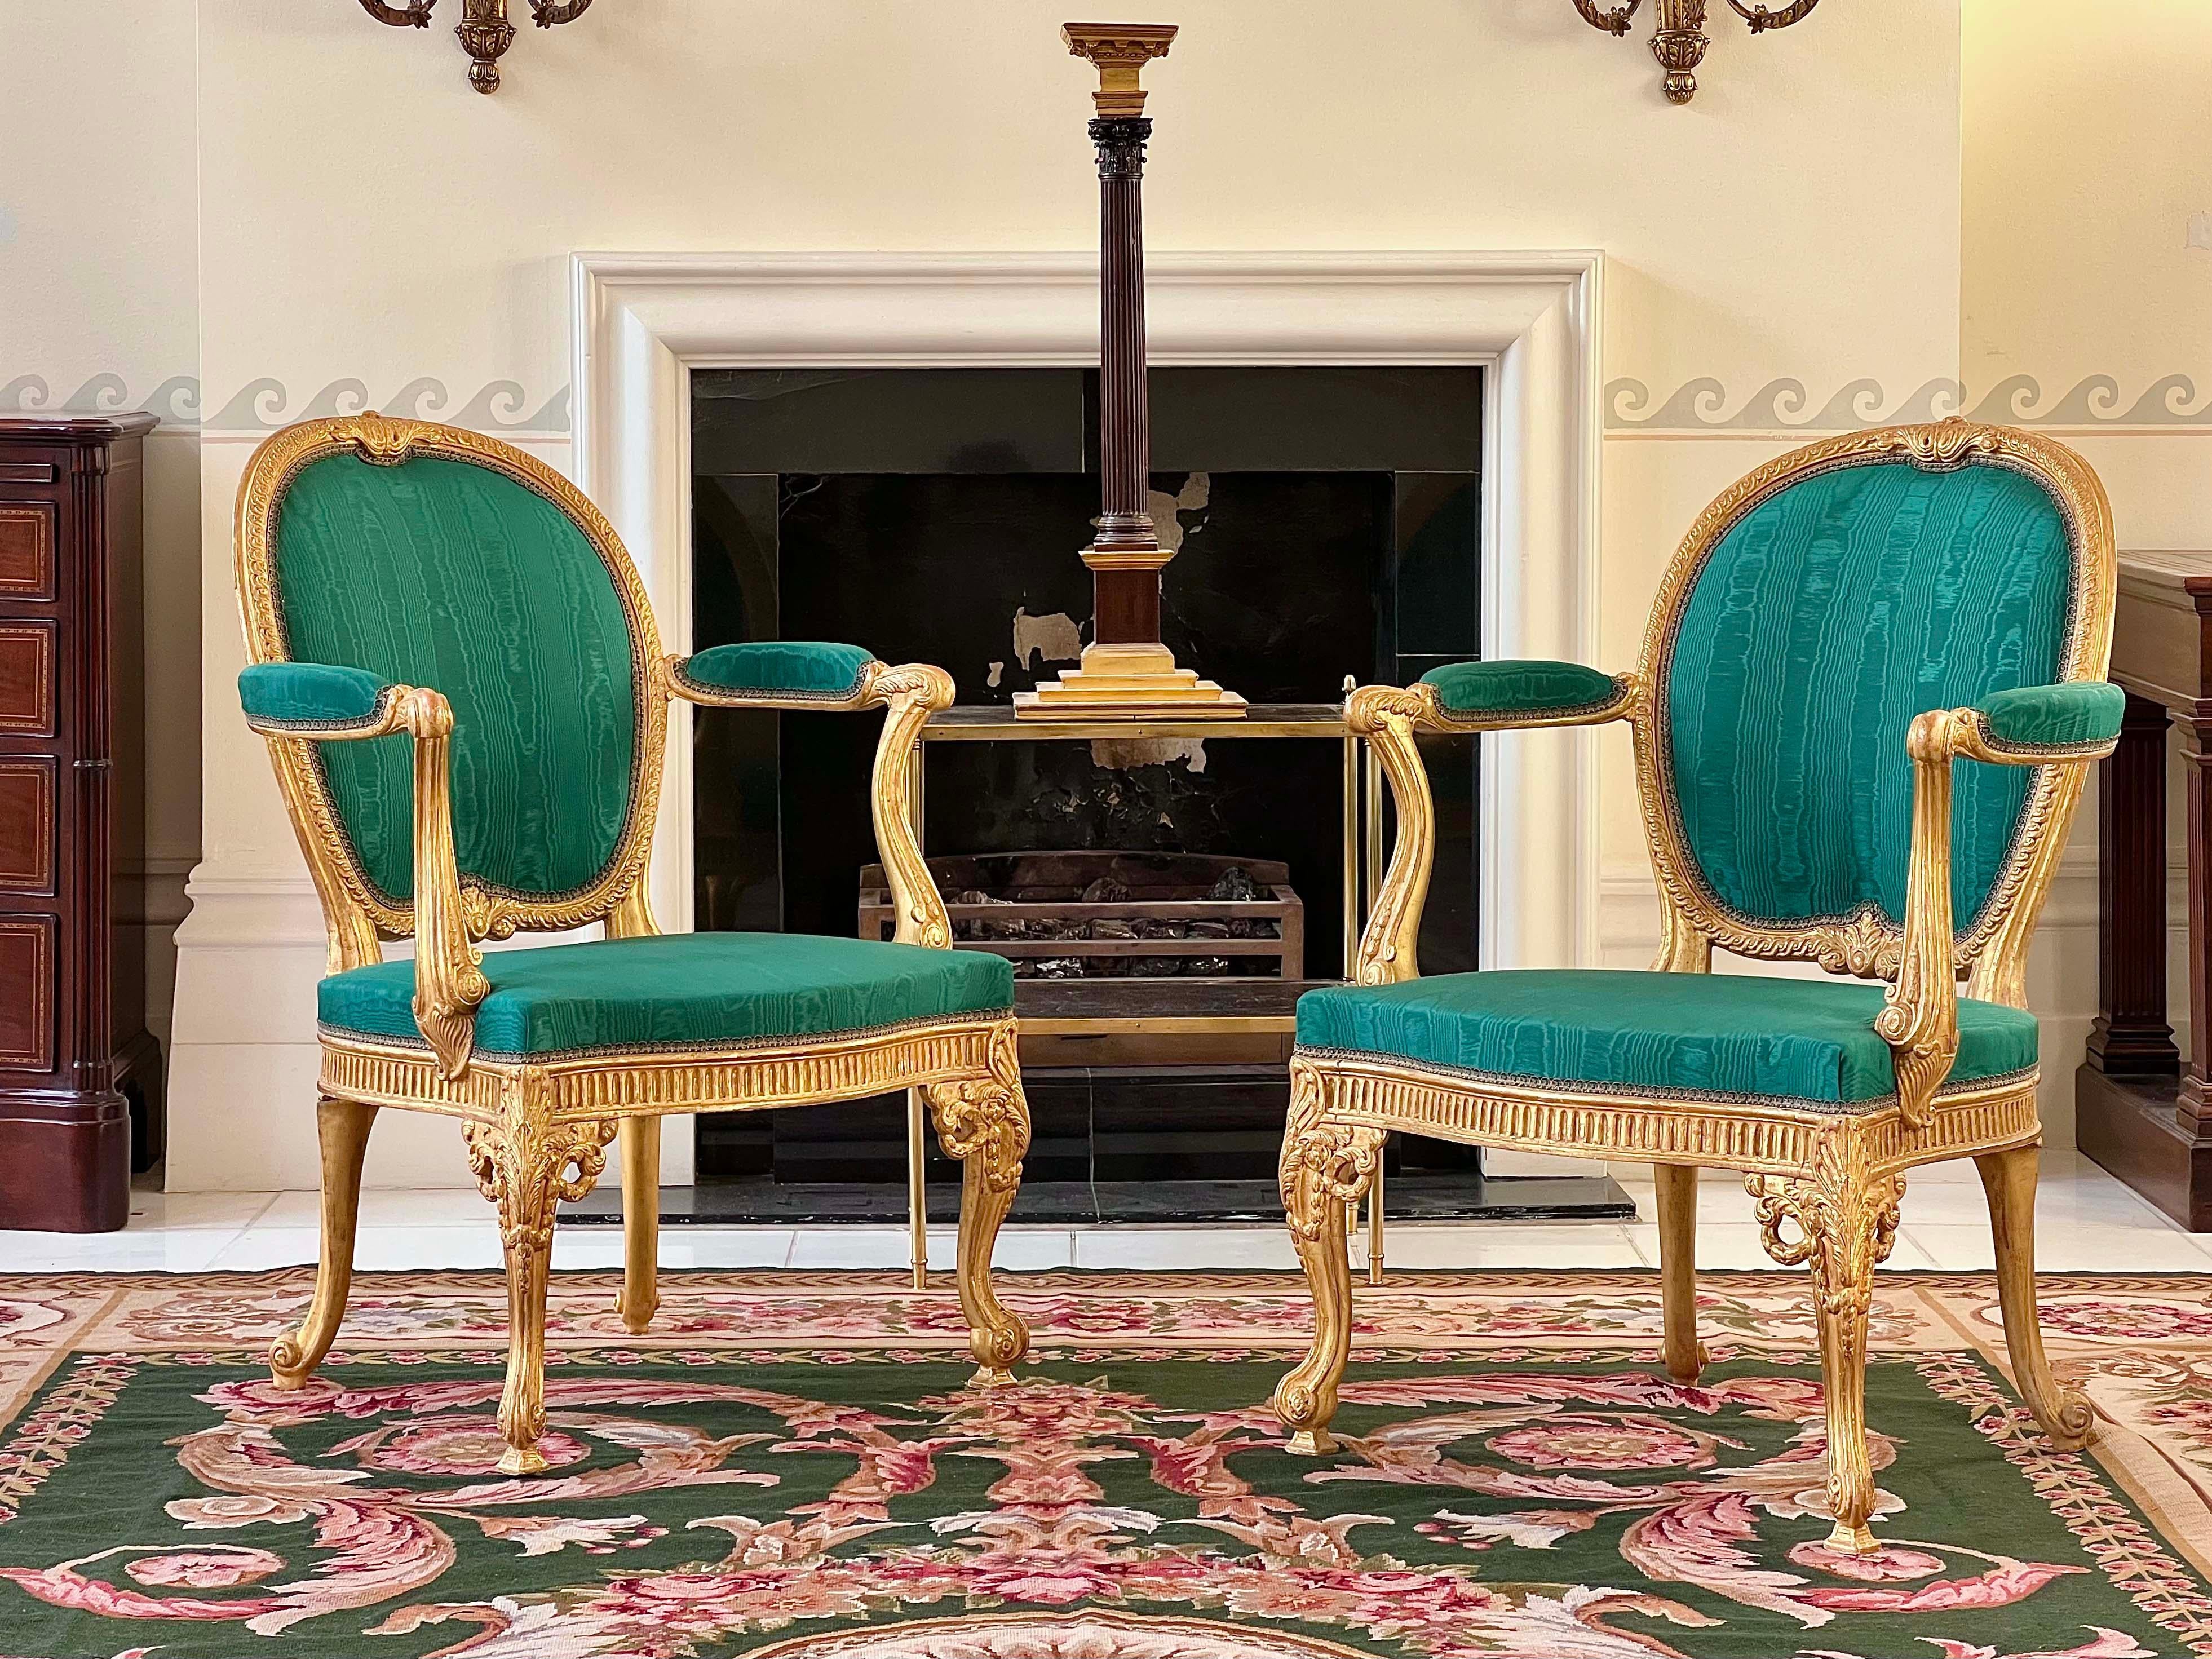 Ein außergewöhnlicher Sessel aus vergoldetem Holz im Stil von George III, nach einem der schönsten Modelle von Thomas Chippendale. Zwei Sessel verfügbar - wählen Sie Menge 2, um beide Sessel zu kaufen.

Englisch, um 1900-1920.

Design/One
Der